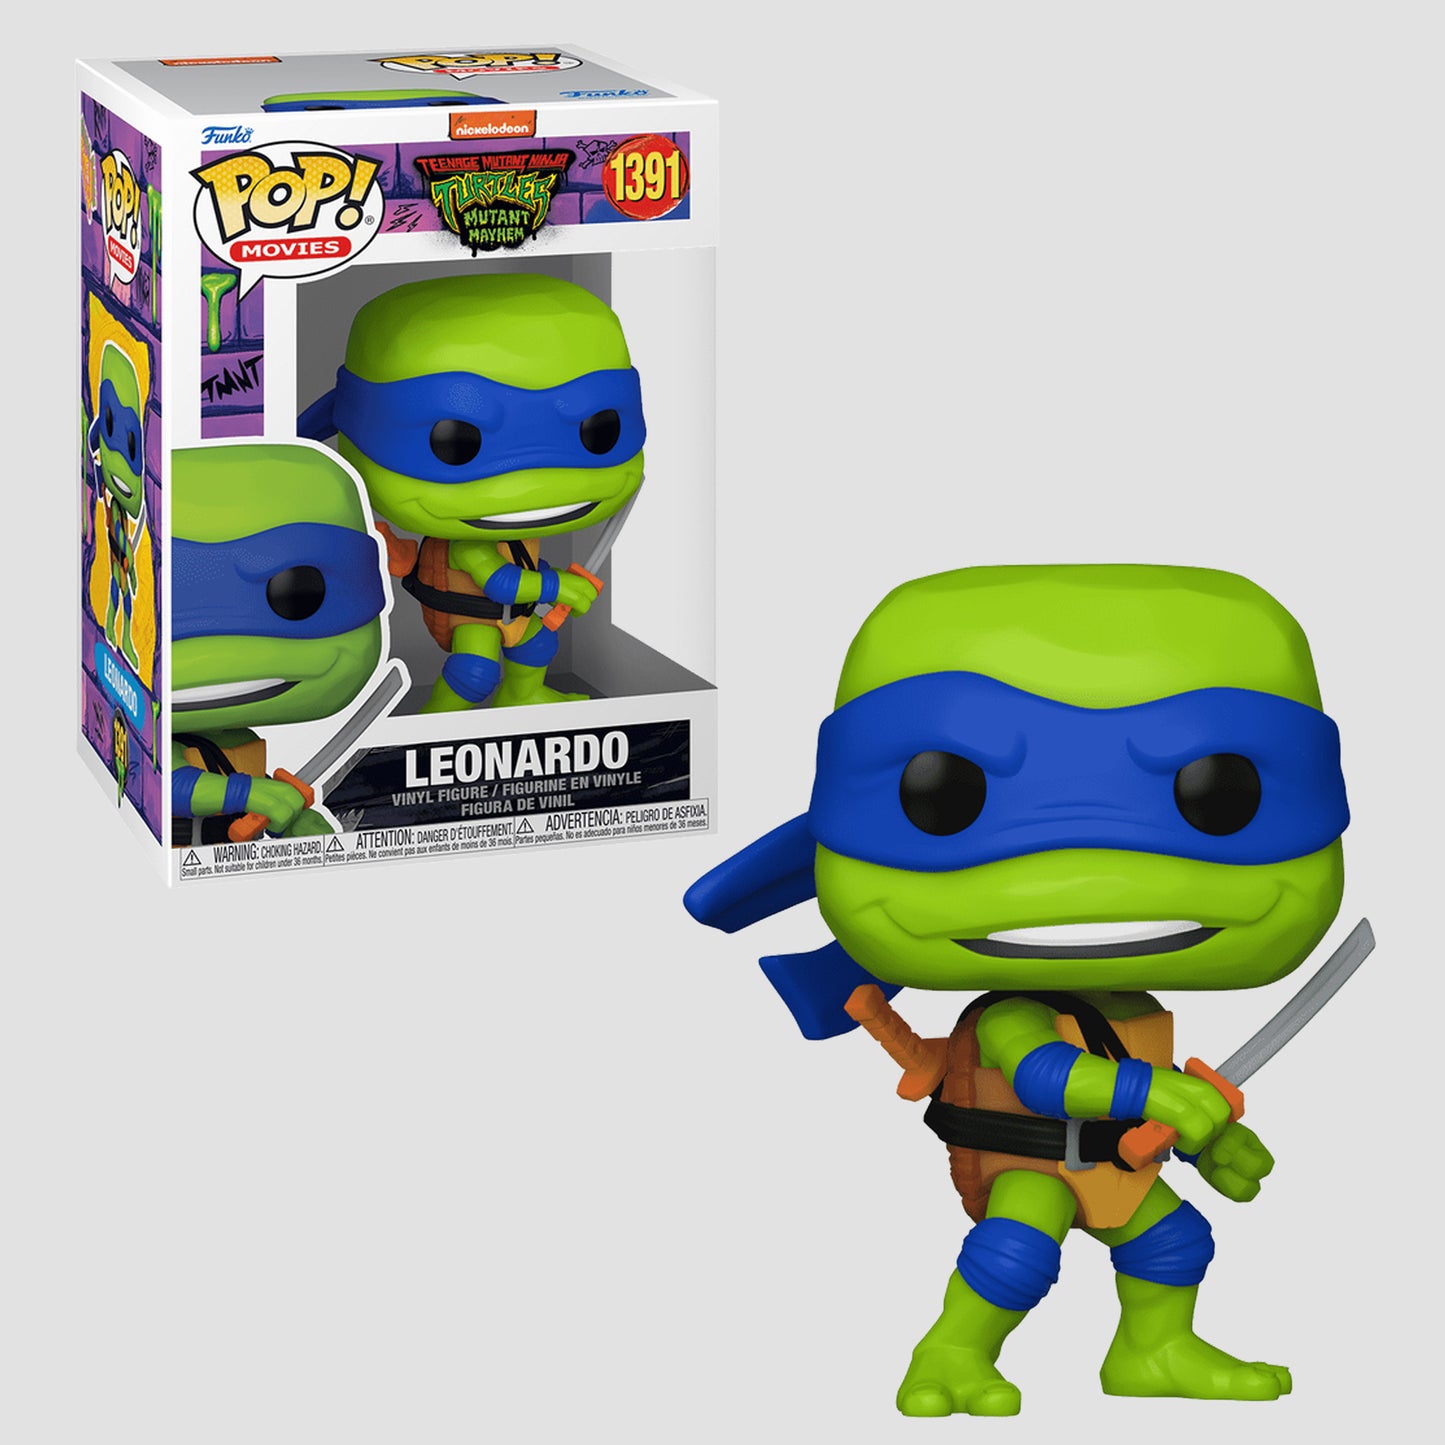 Leonardo (Teenage Mutant Ninja Turtles: Mutant Mayhem) Funko Pop!